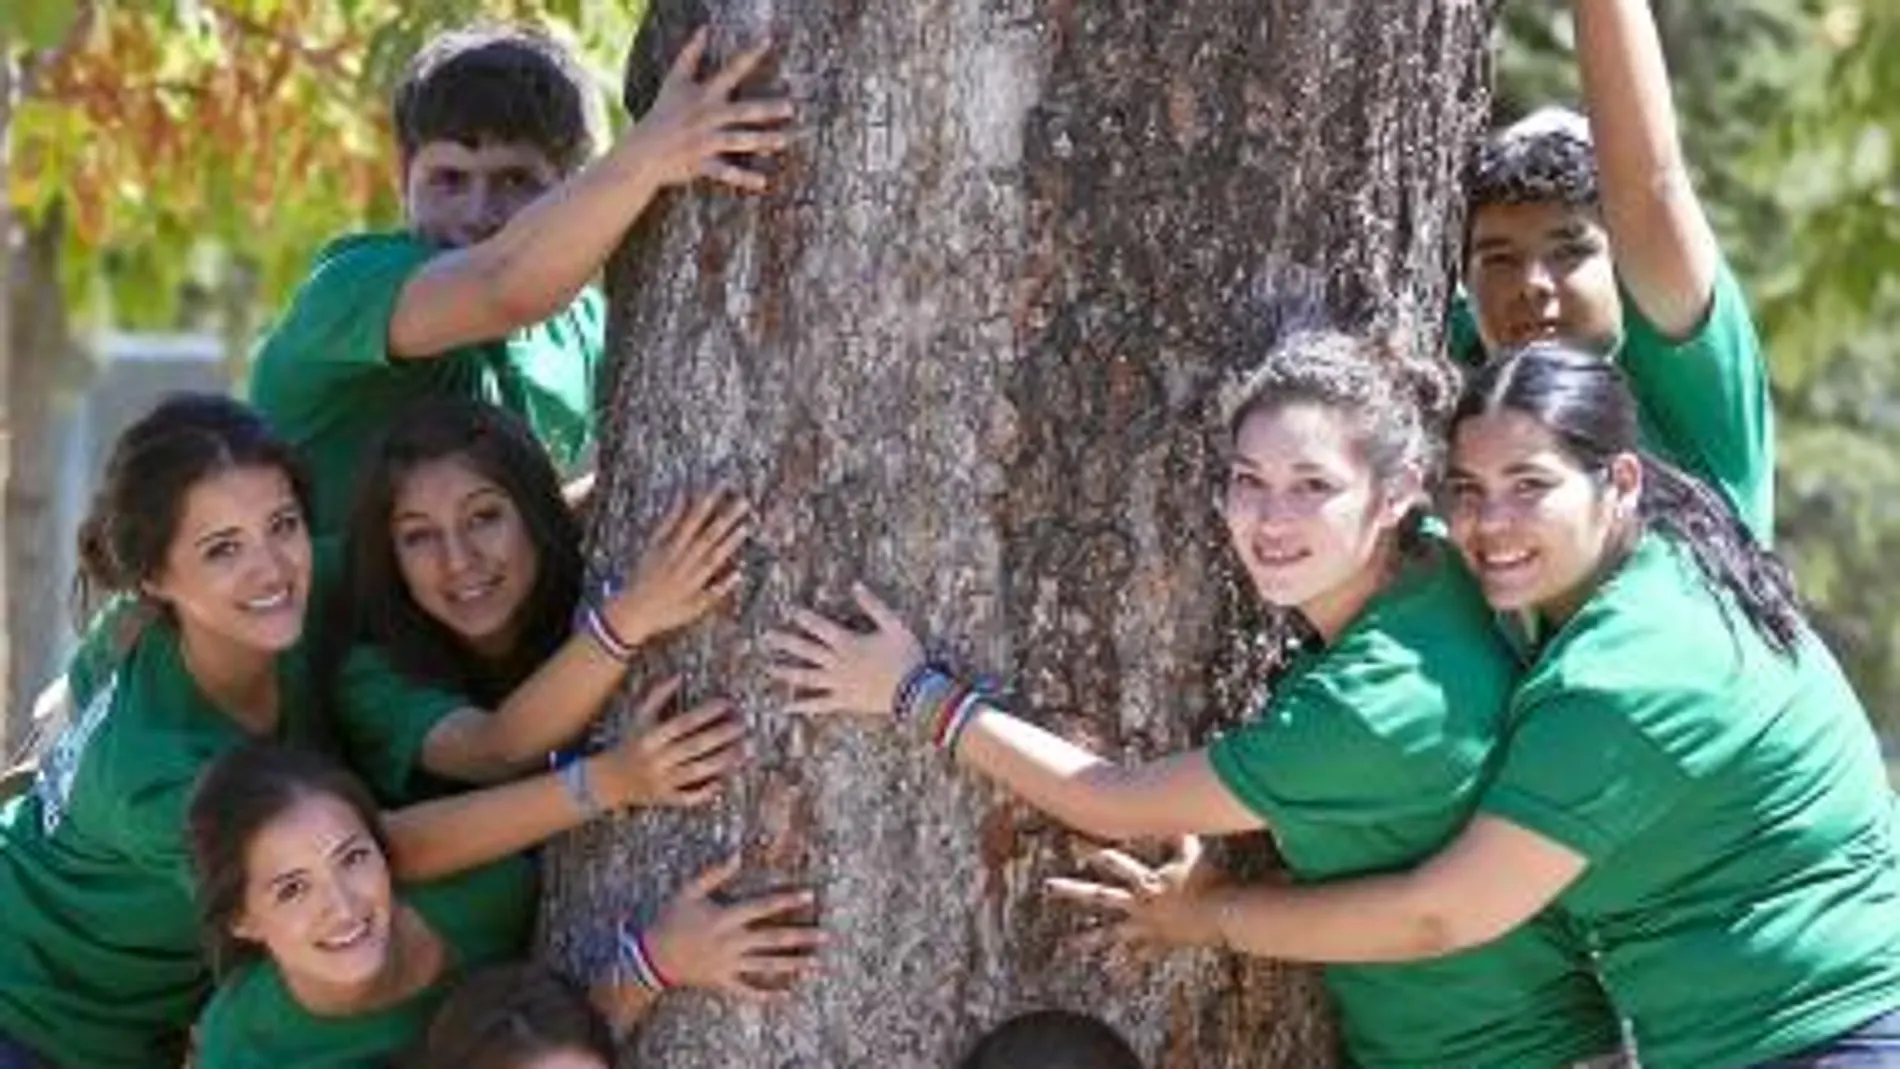 Peregrinos de México abrazados a un árbol del Parque del Retiro